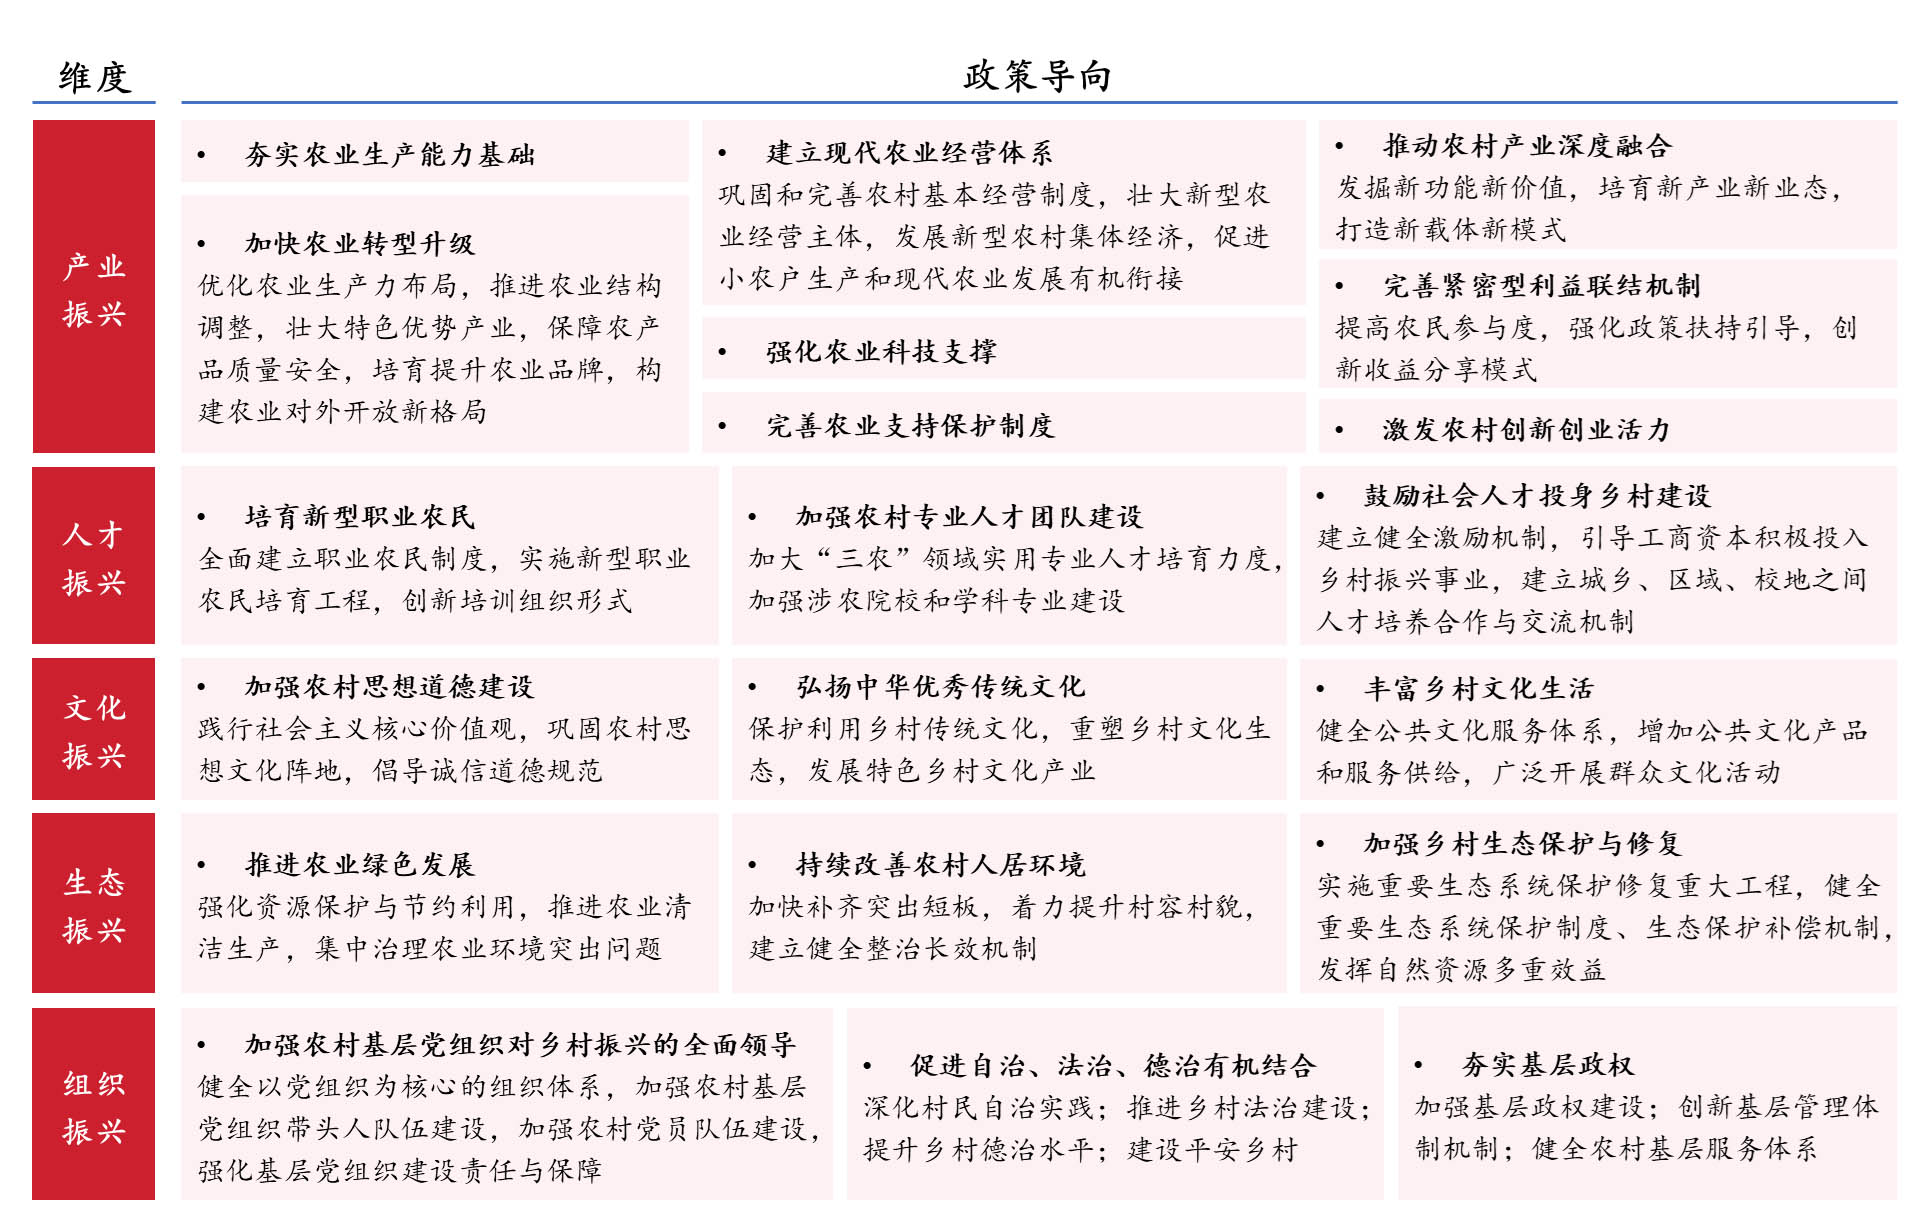 国家及广东省乡村振兴规划核心内容提炼